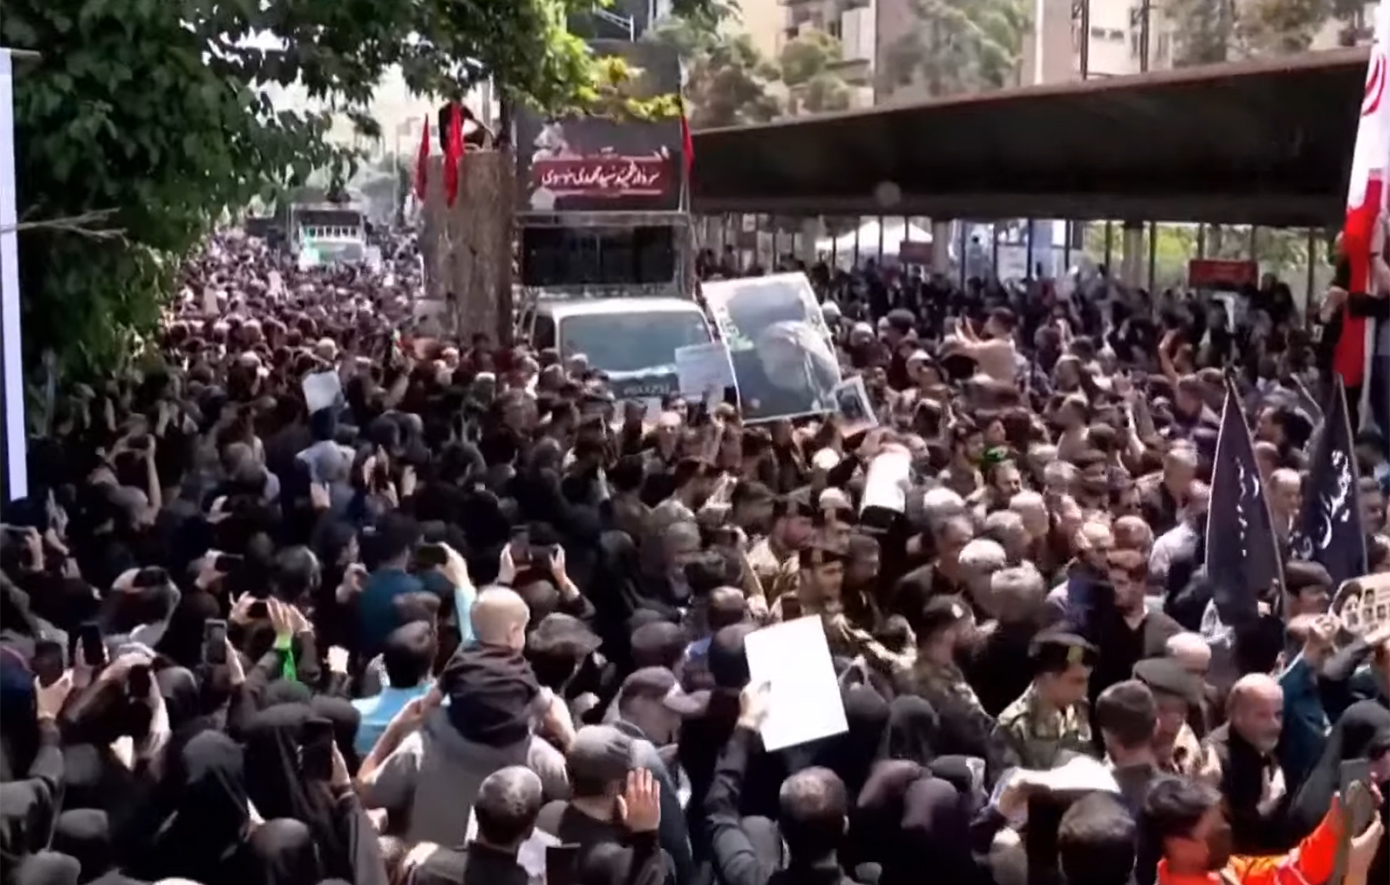 Τεράστιο πλήθος συγκεντρώθηκε στην Τεχεράνη για να αποτίσει φόρο τιμής στον εκλιπόντα πρόεδρο Ραϊσί